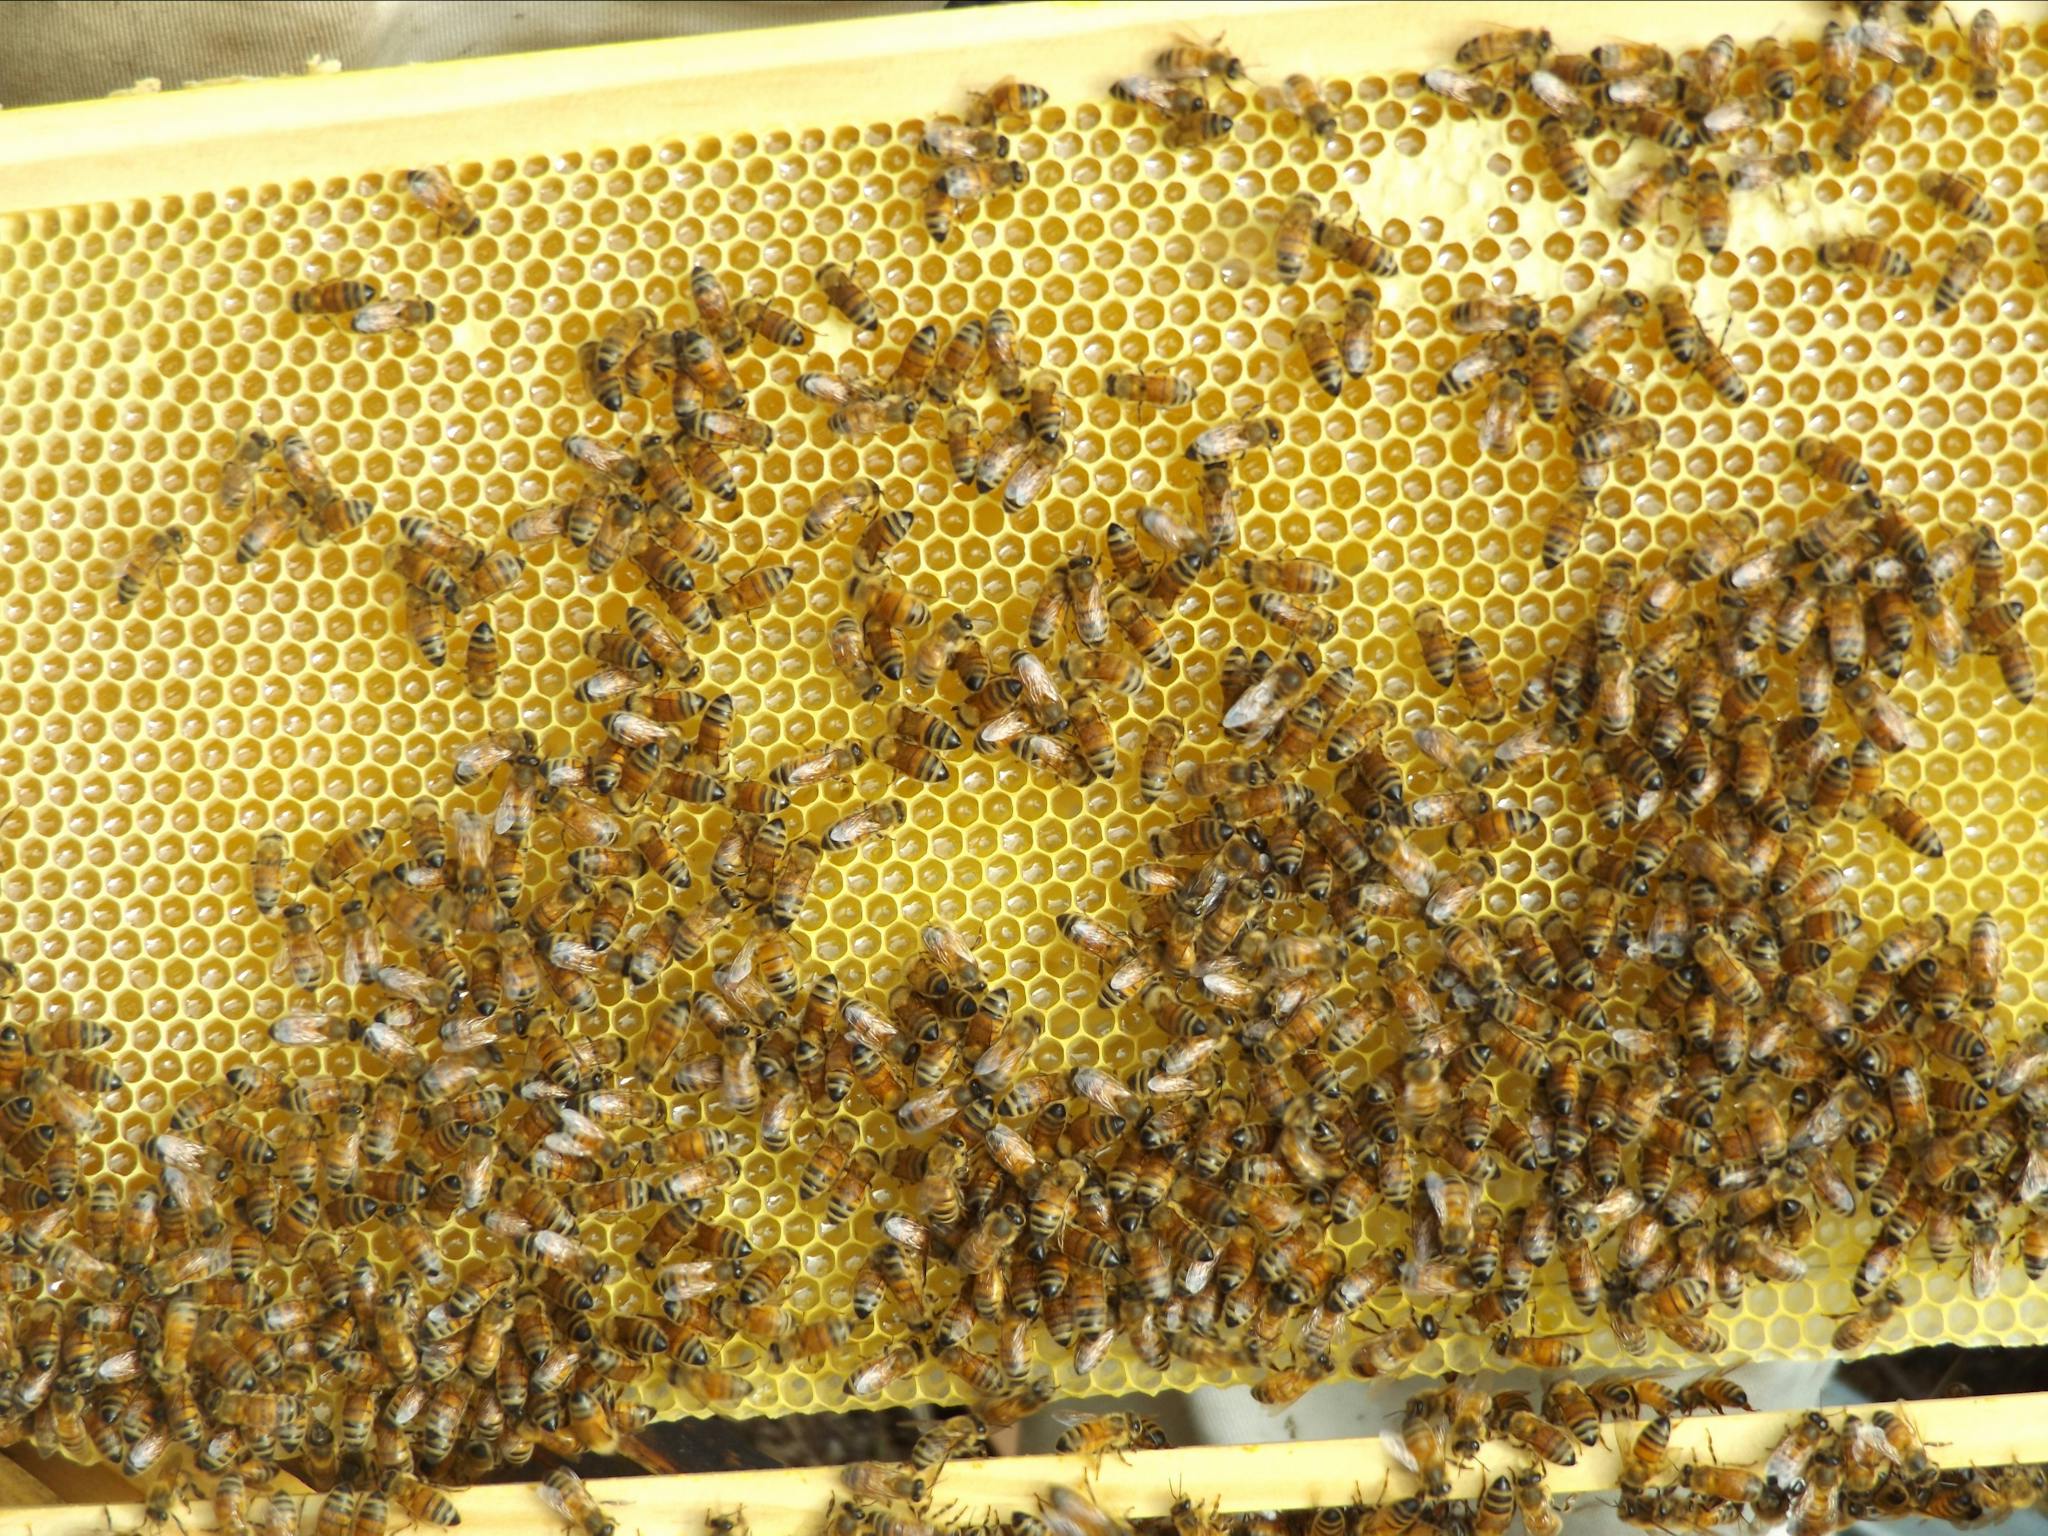 Making honey